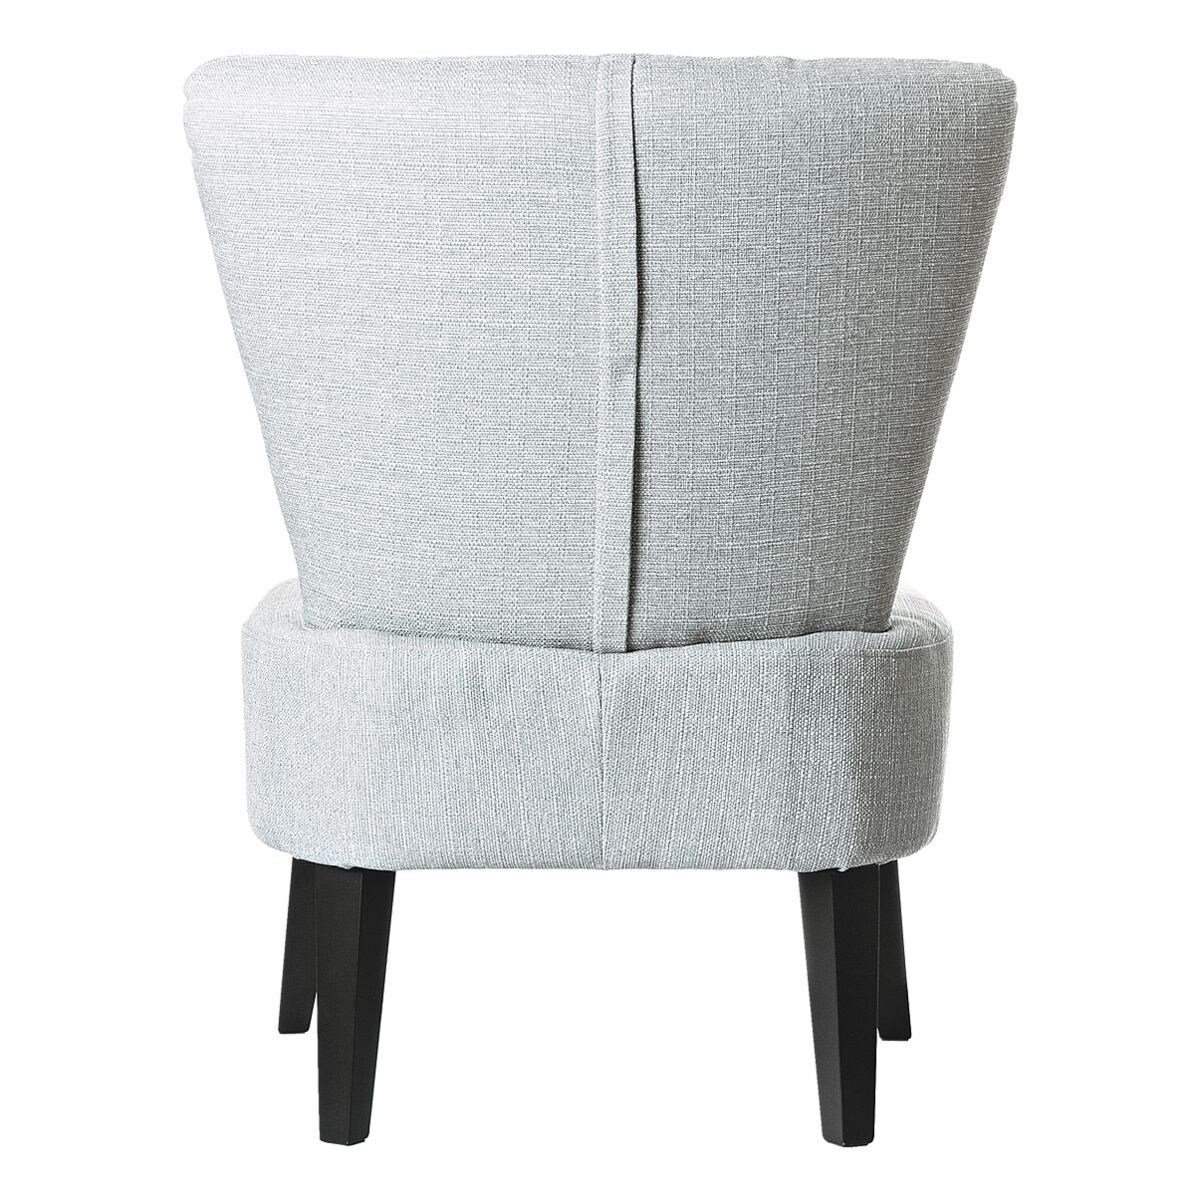 PAPERFLOW Sessel Brighton, grau Vintage-Look, Sitzfläche, extrabreite Holzfüße im